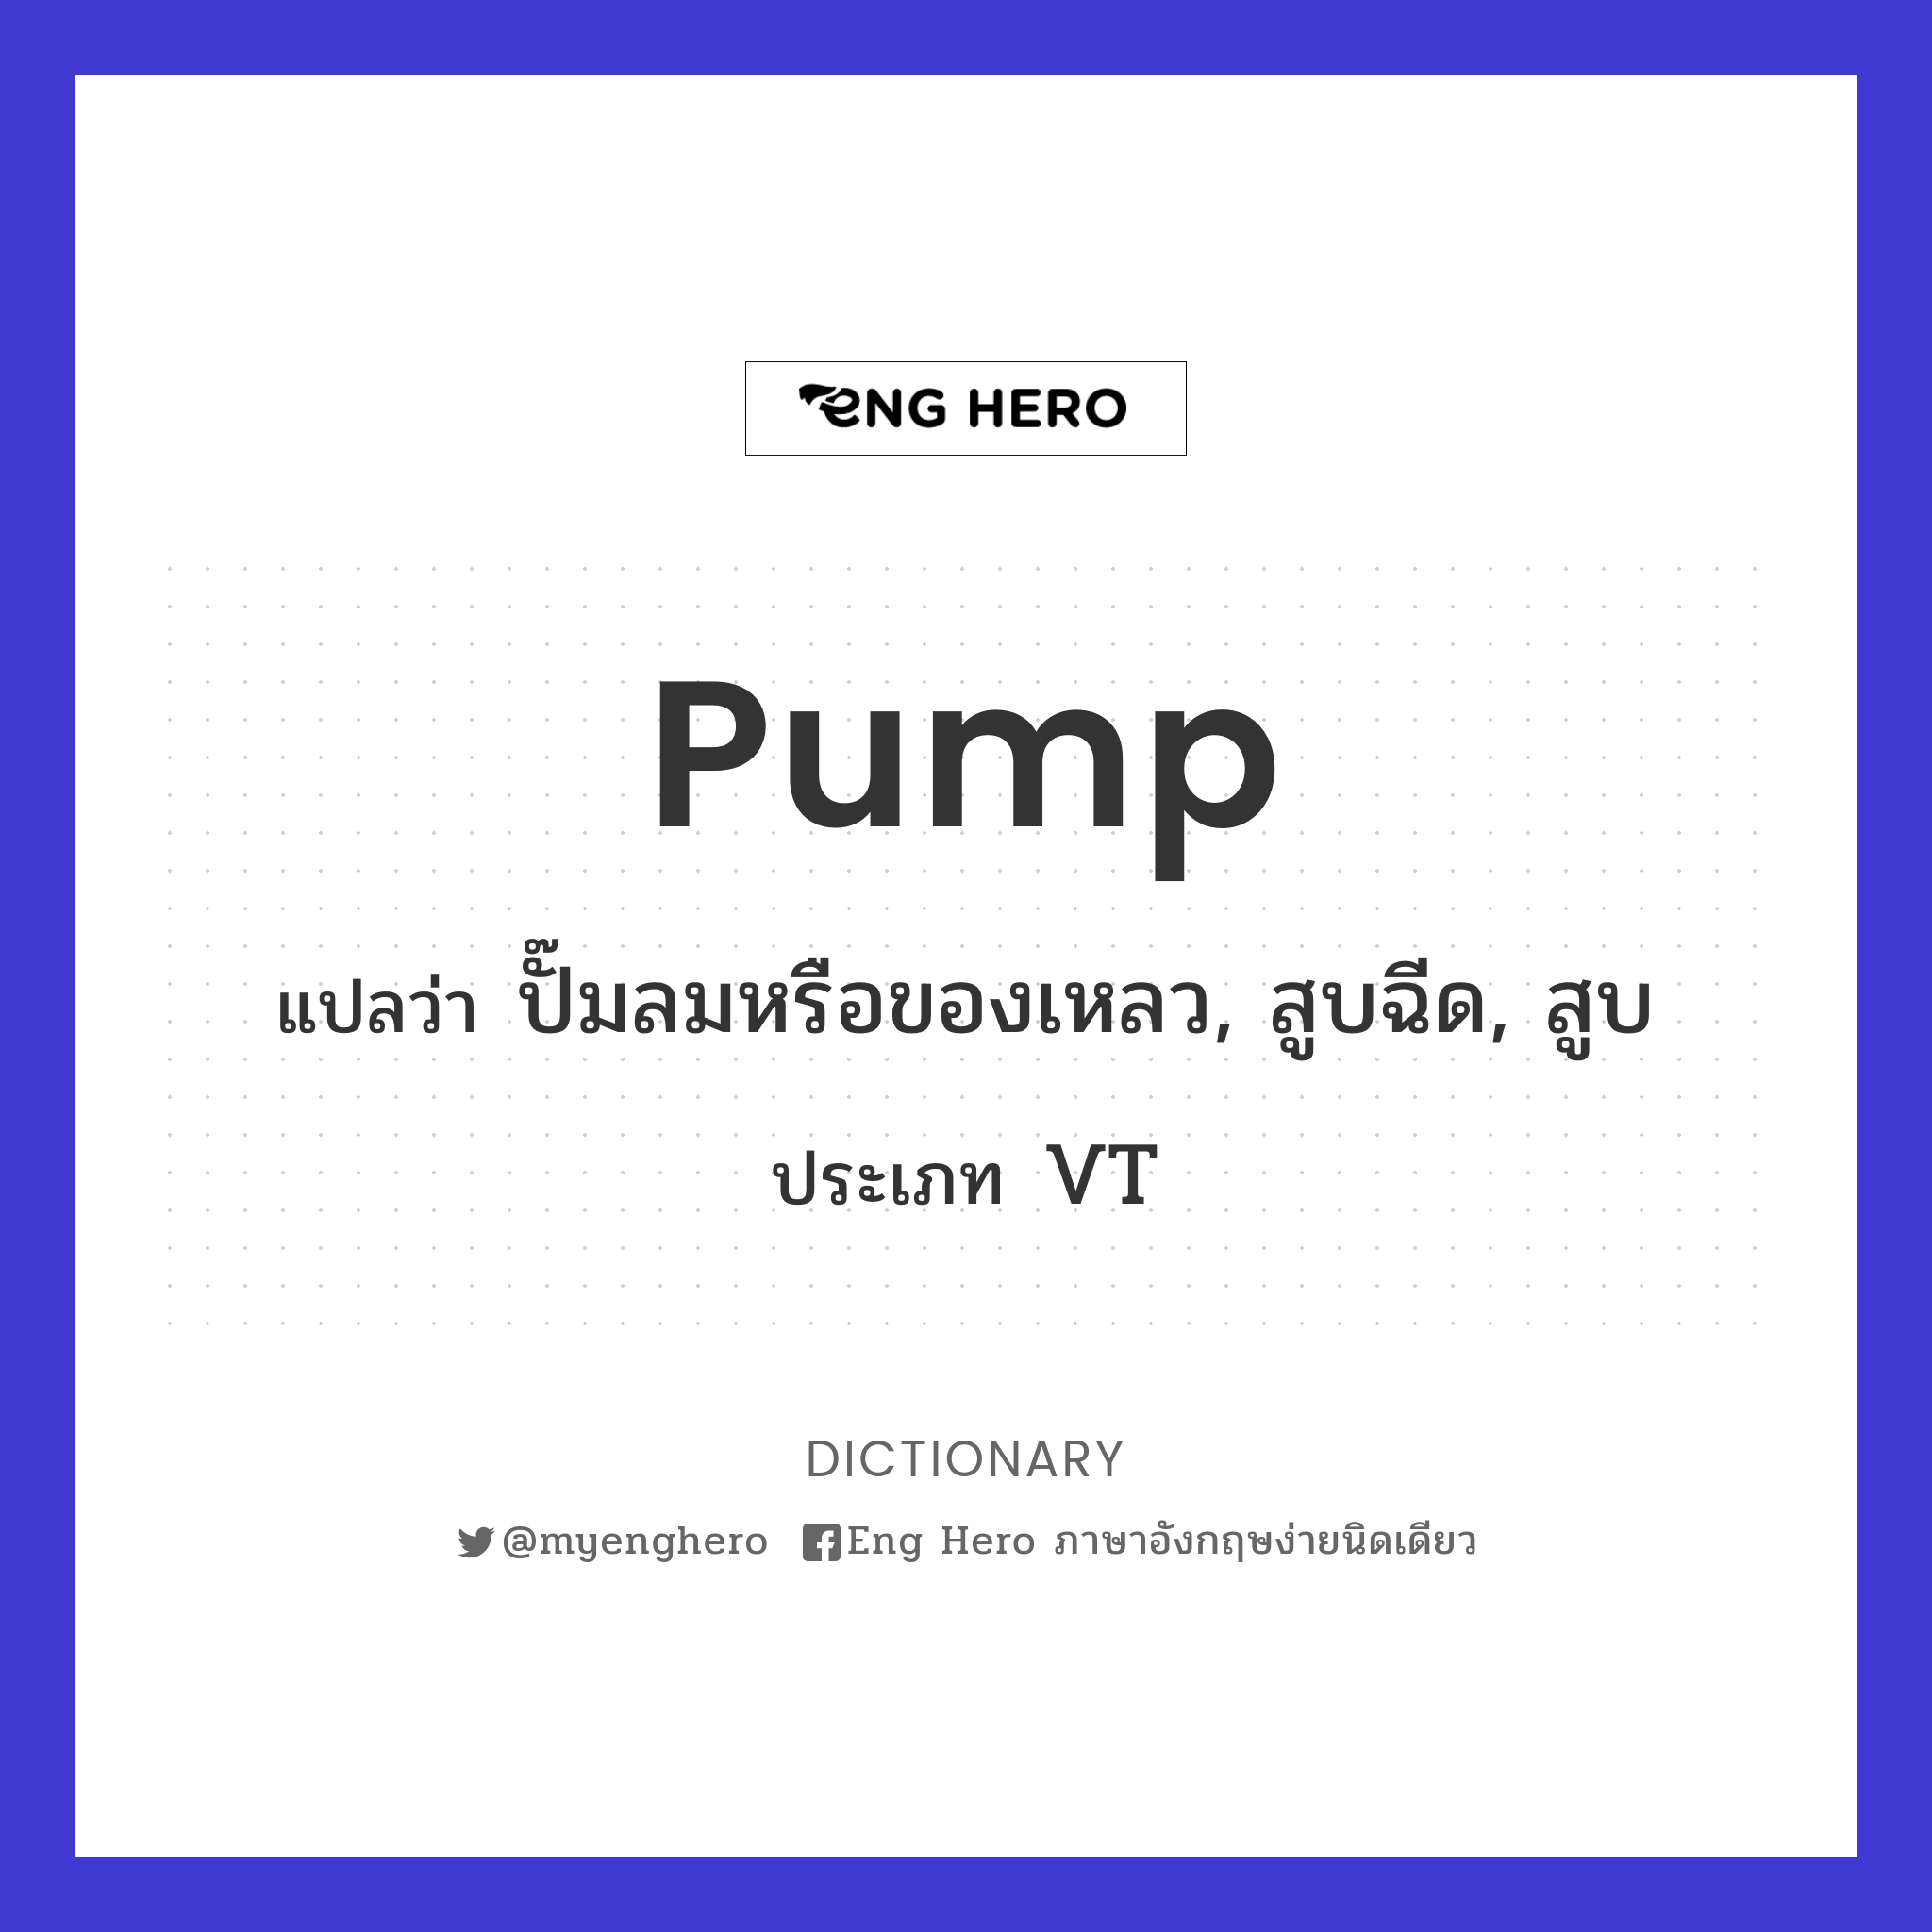 pump